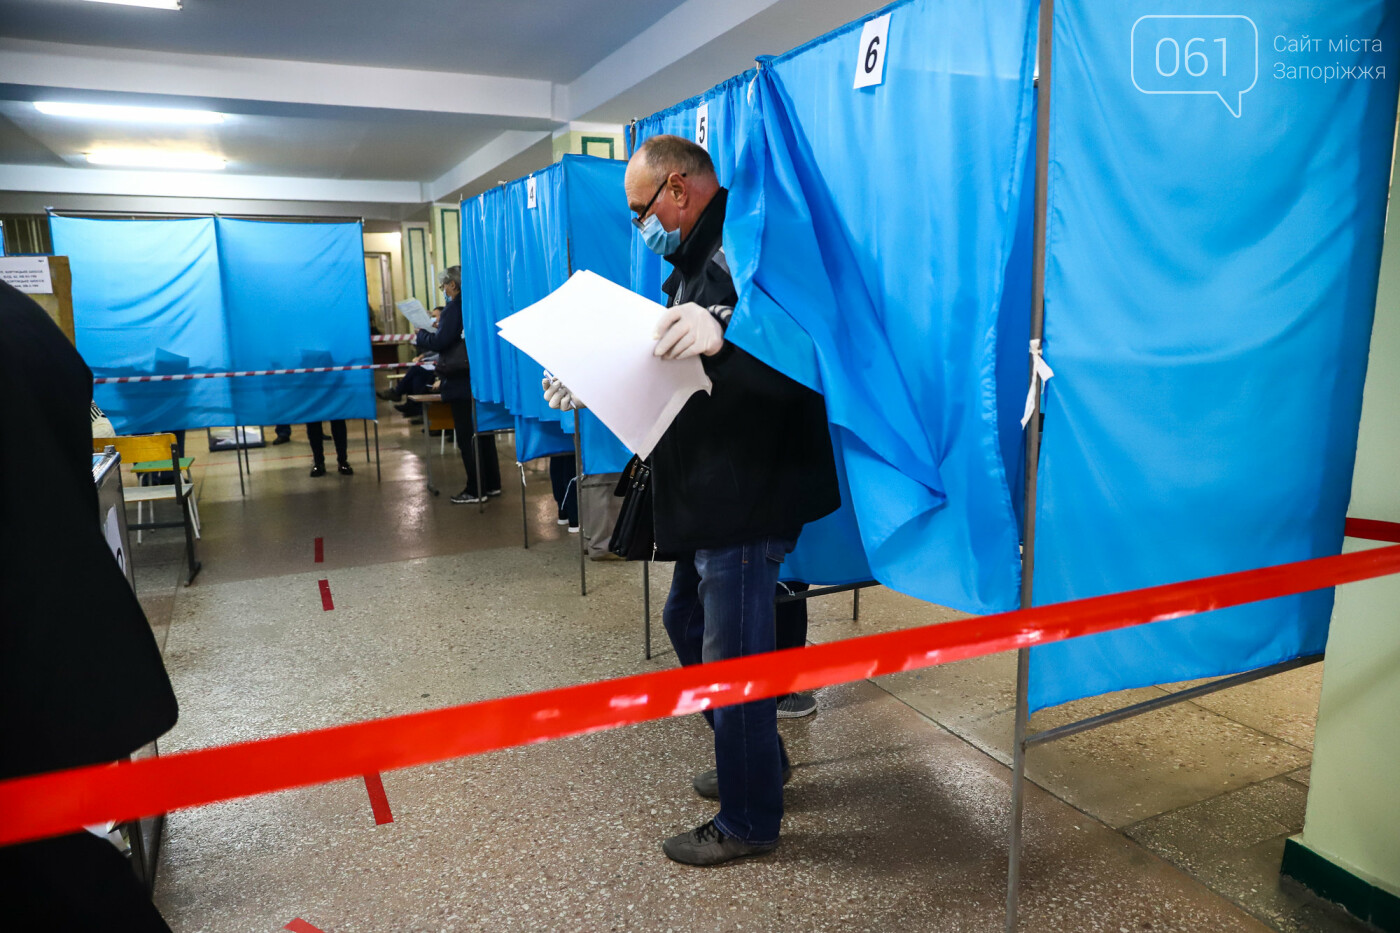 Выборы в условиях карантина: как запорожцы выбирают мэра и депутатов, - ФОТОРЕПОРТАЖ, фото-40